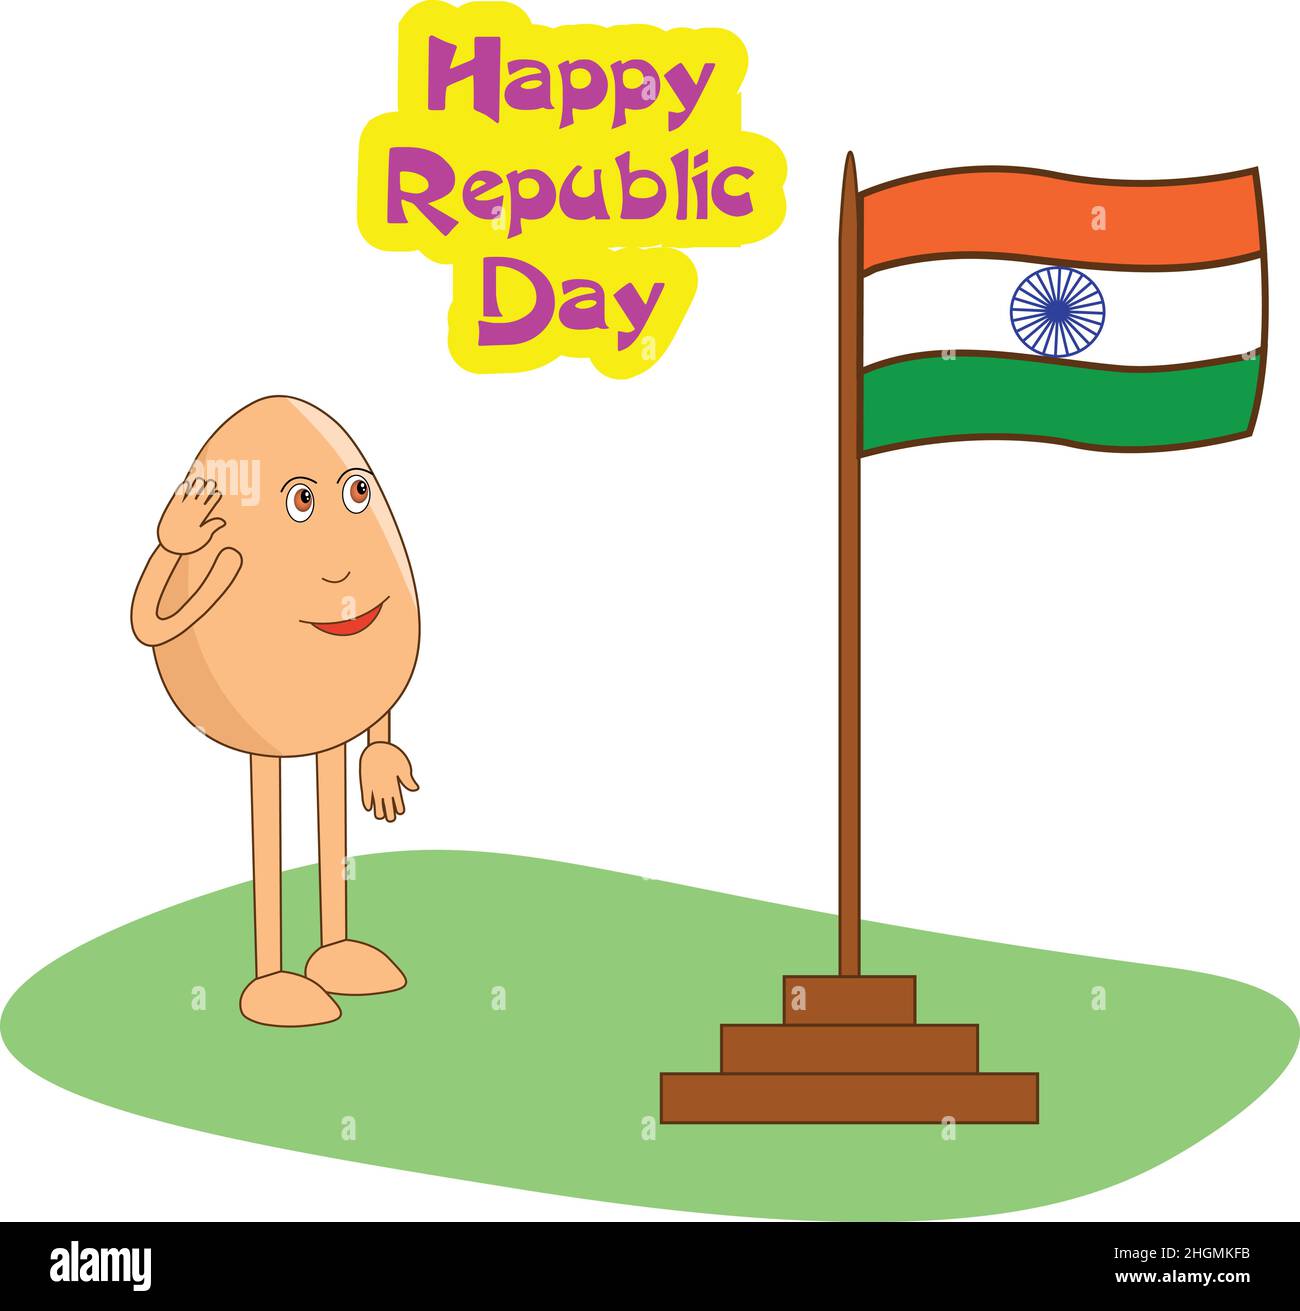 dessin animé de l'oeuf de patriot saluant le drapeau national indien Illustration de Vecteur